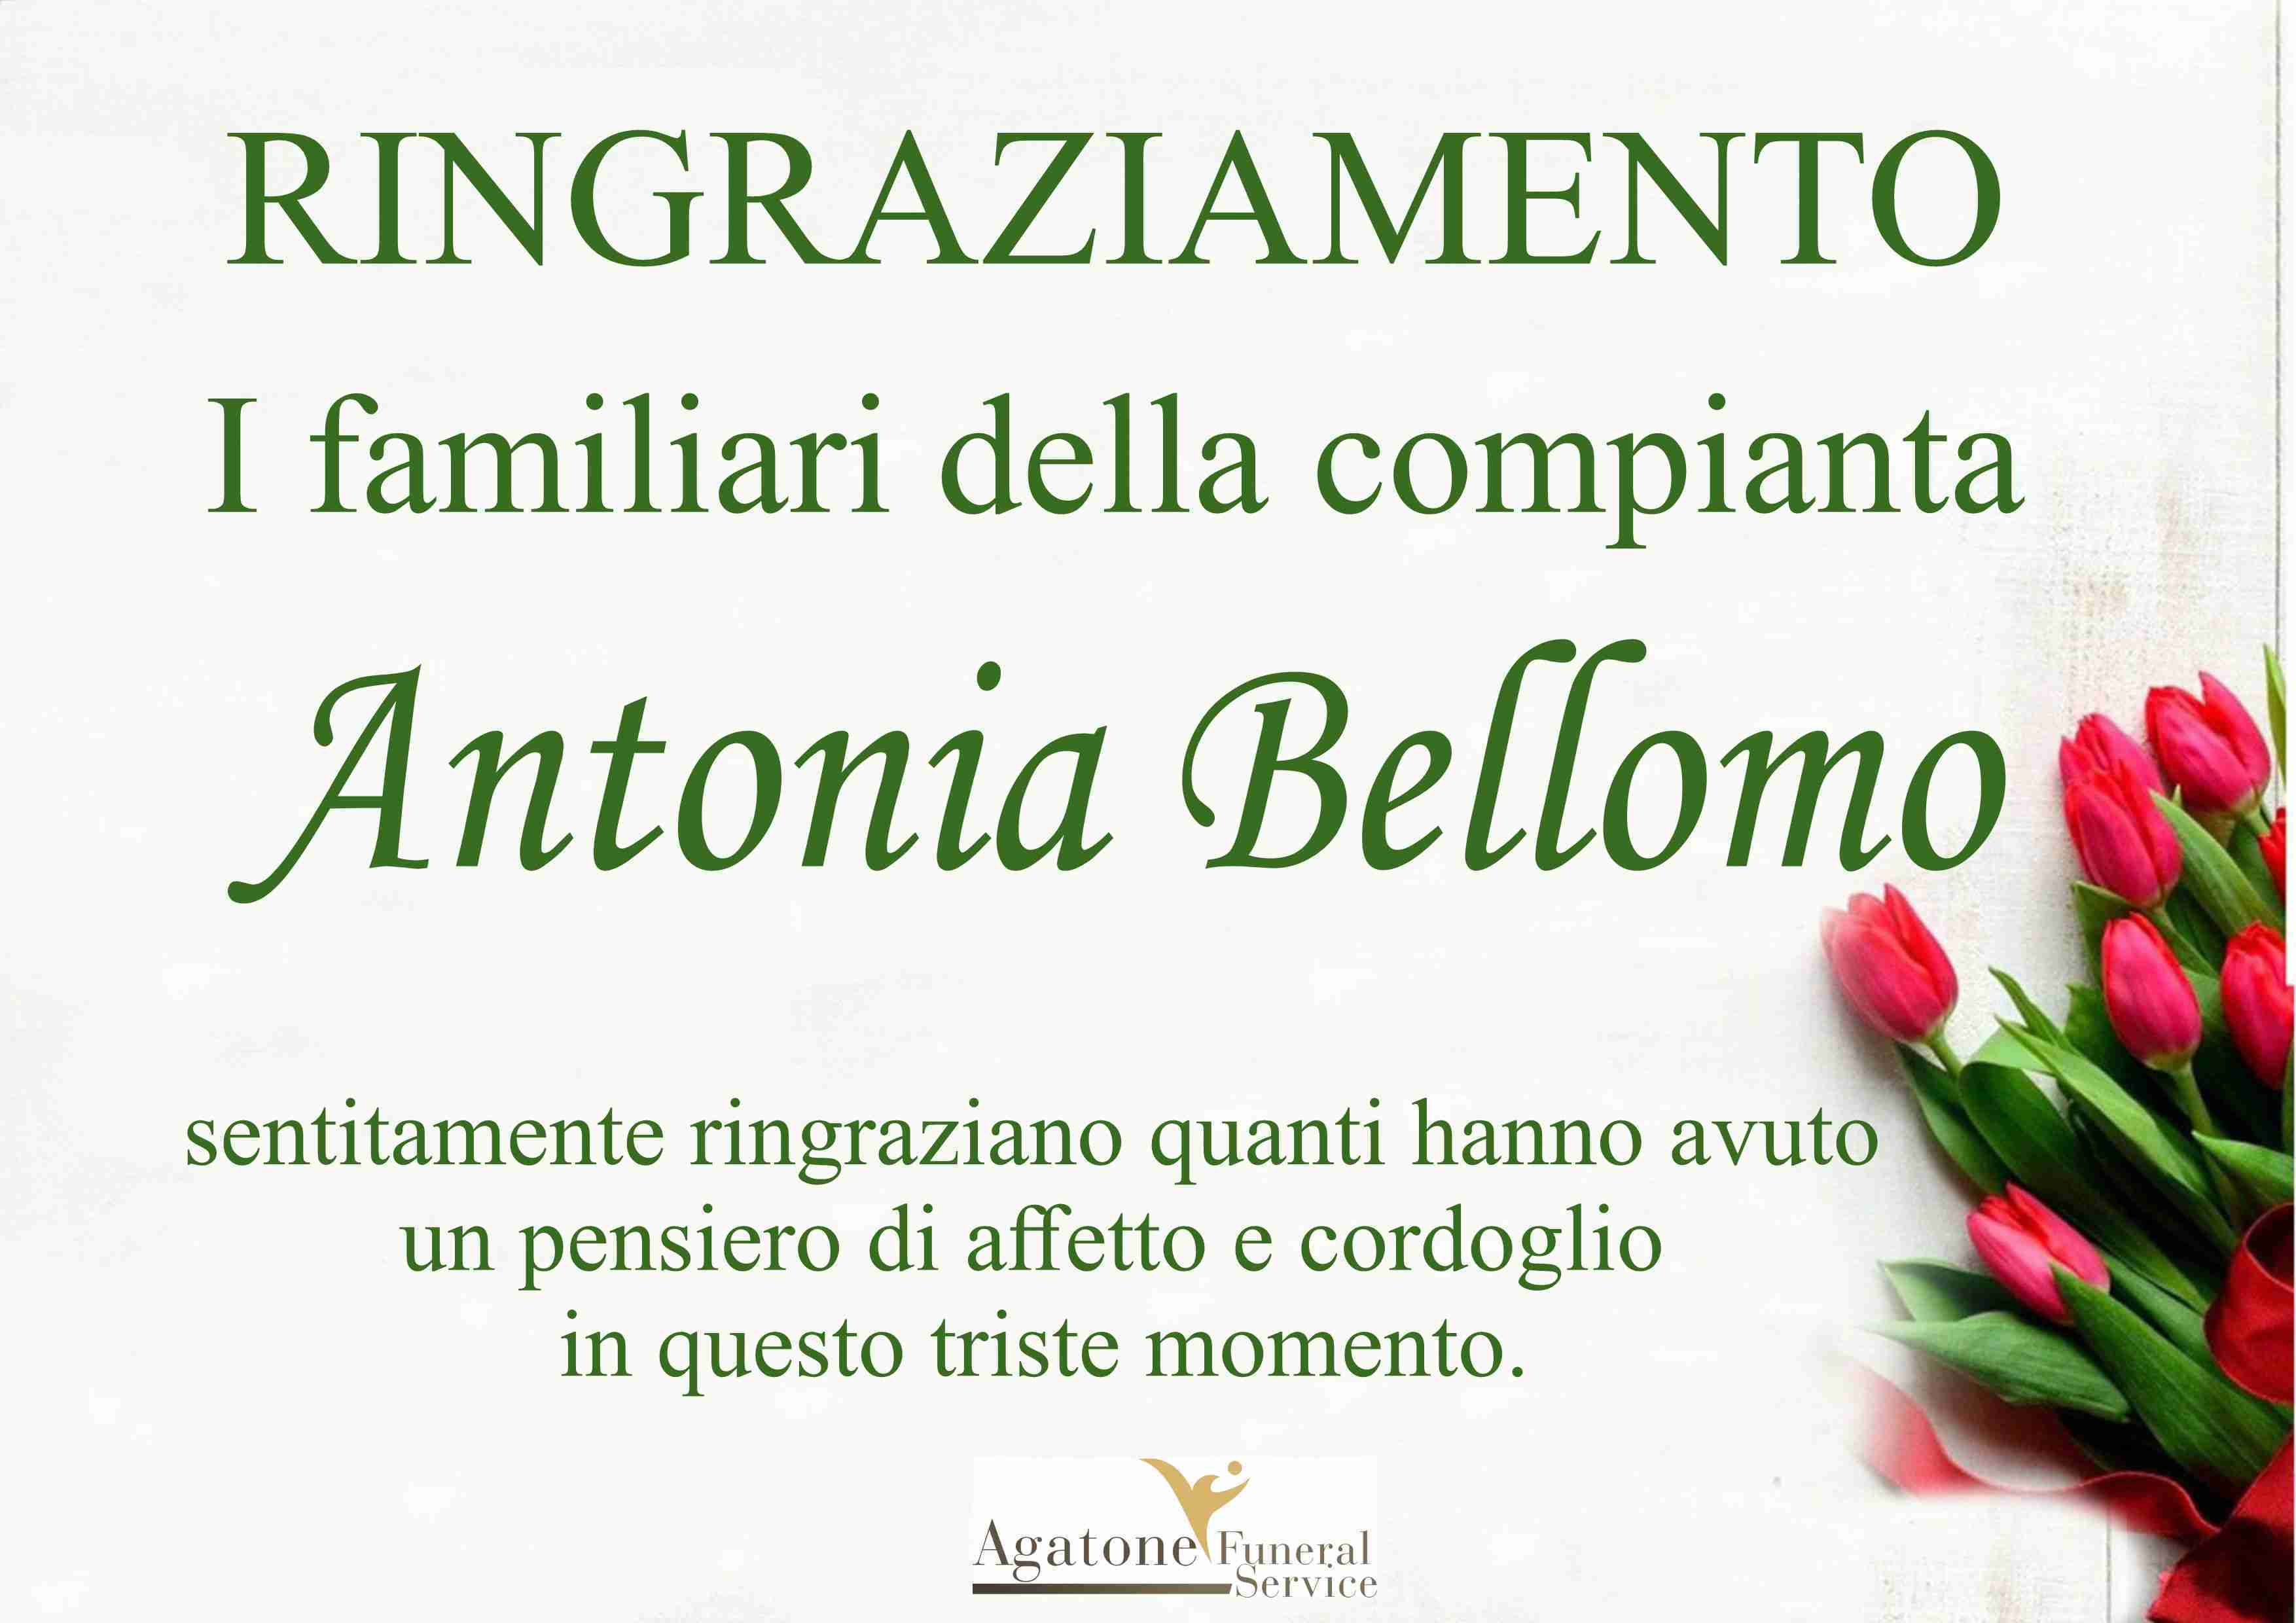 Antonia Bellomo